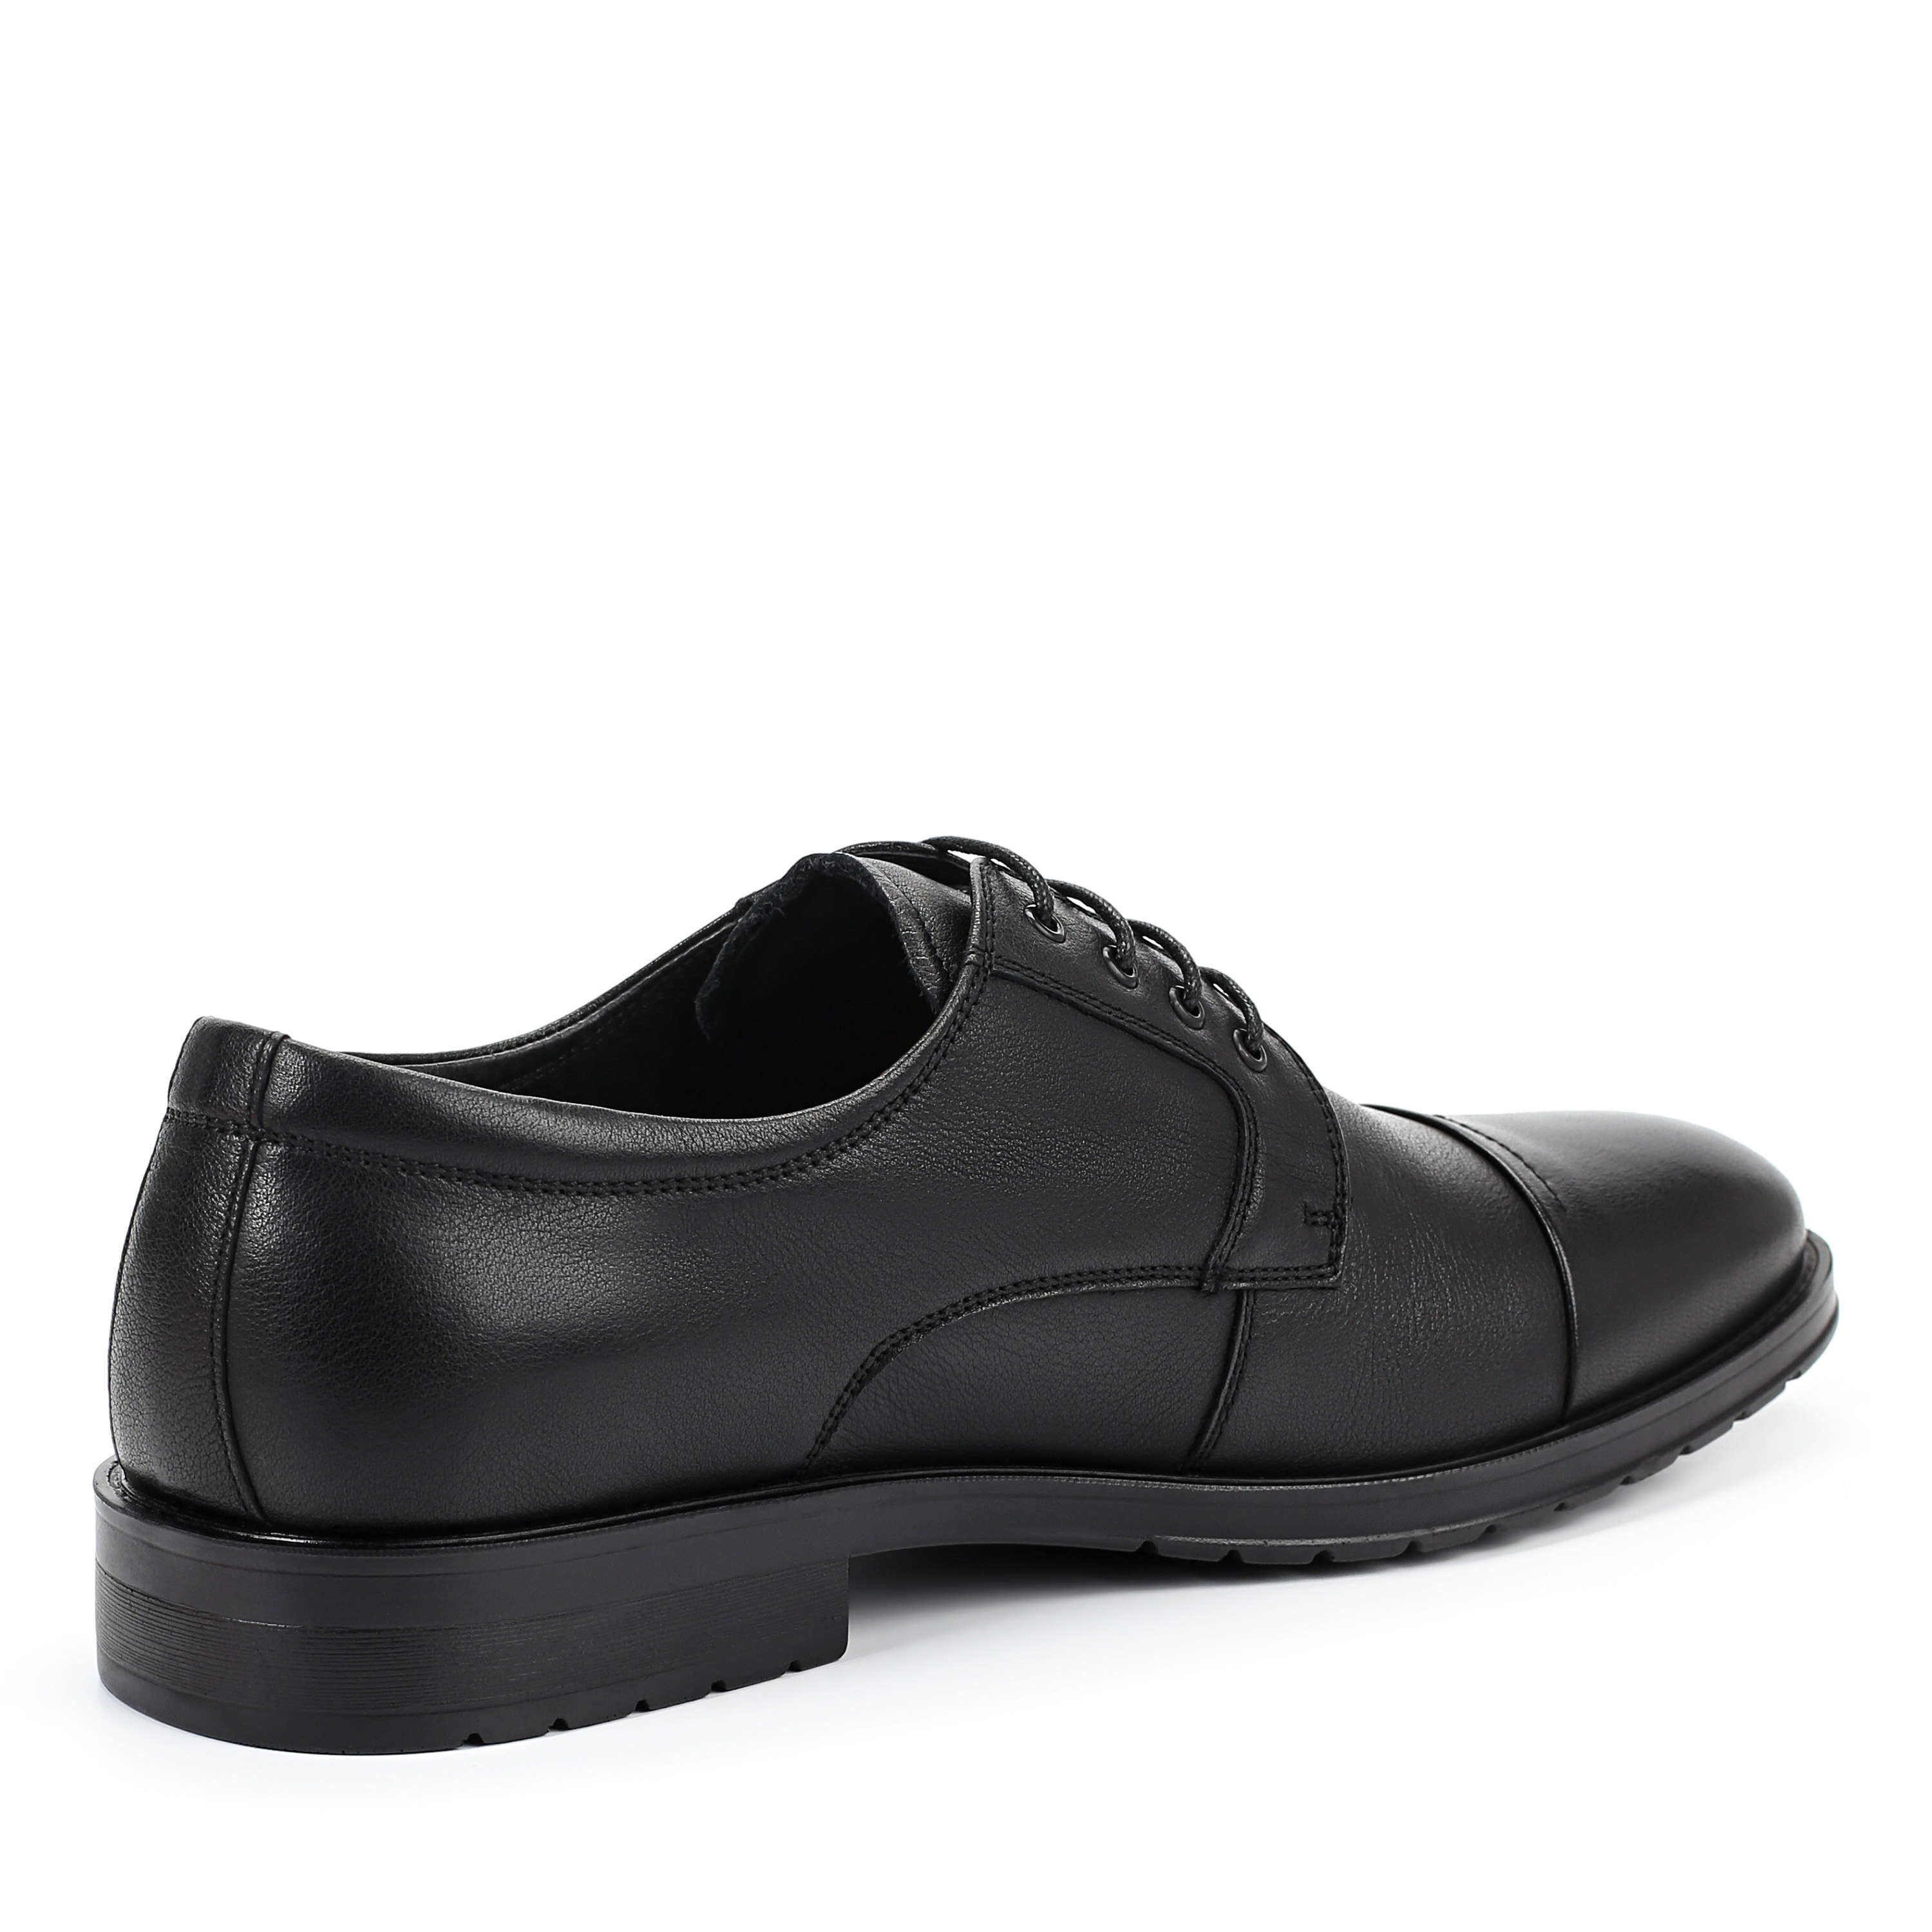 Туфли Thomas Munz 104-019E-1101, цвет черный, размер 41 дерби - фото 3